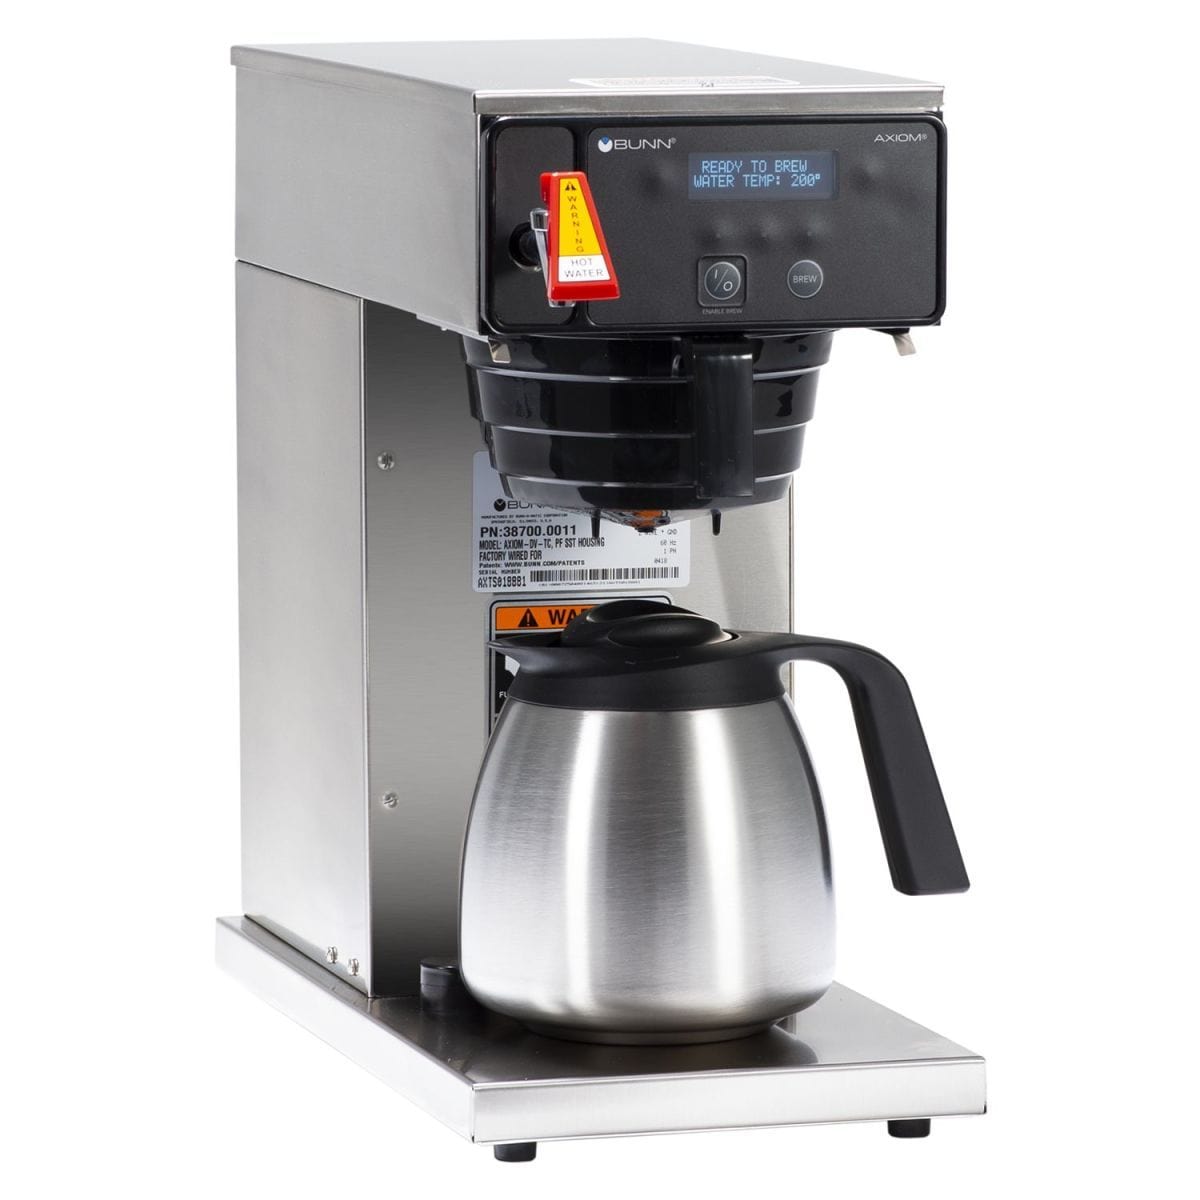 BUNN Home 42900.0301 My Café® Single-Serve Coffee Brewer - Black &  Stainless, 120v